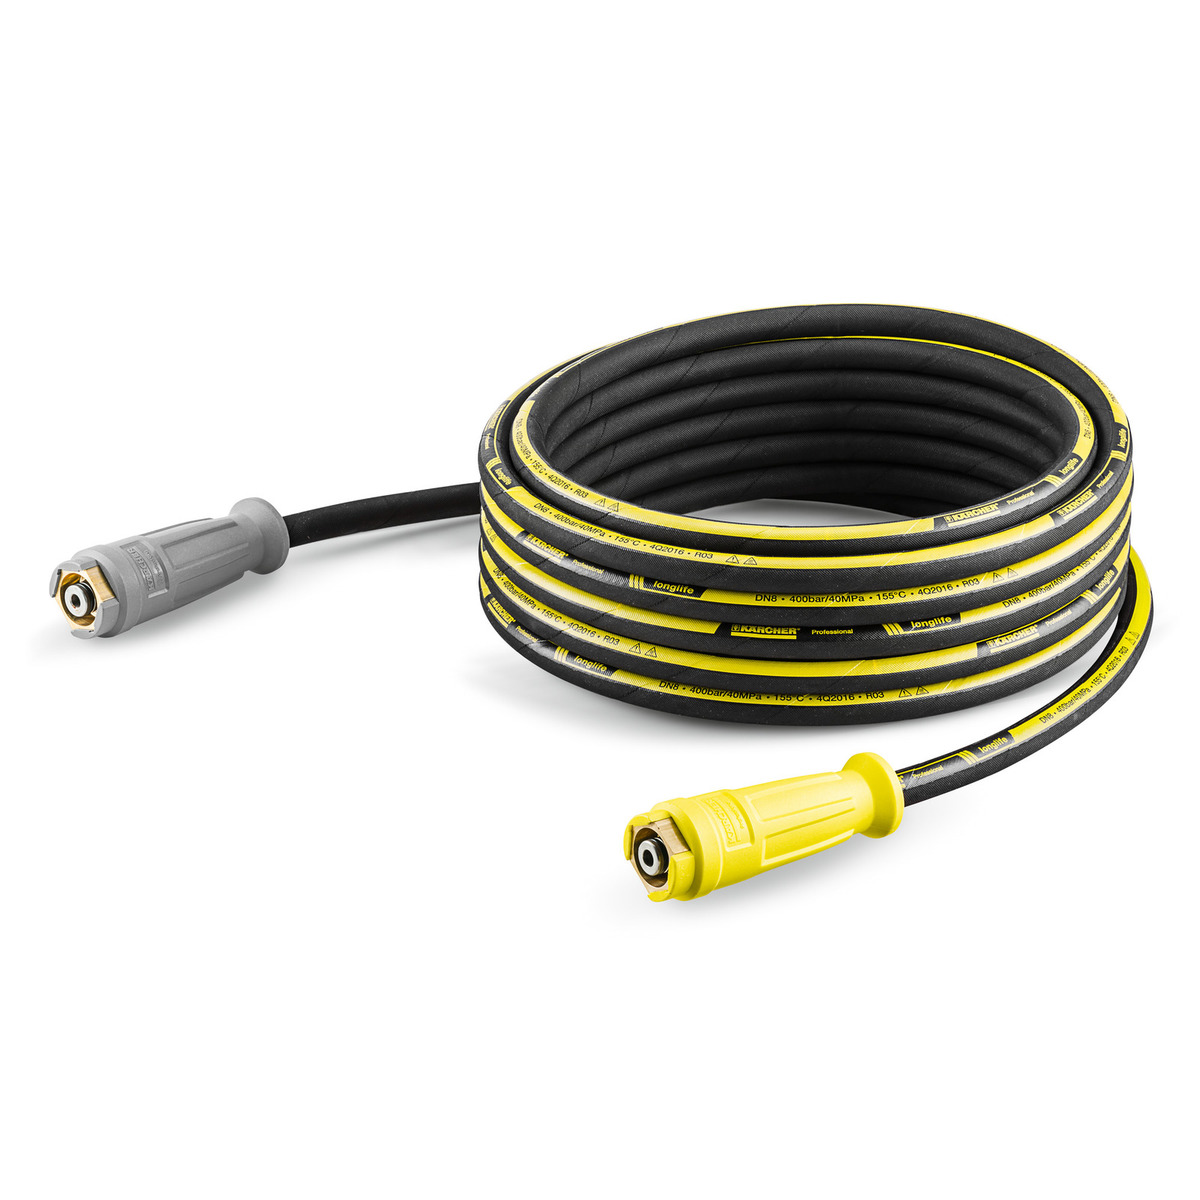 High-pressure hose Longlife, 10 m, 400 bar, 2 x EASY!Lock – Өндөр даралтын хоолой